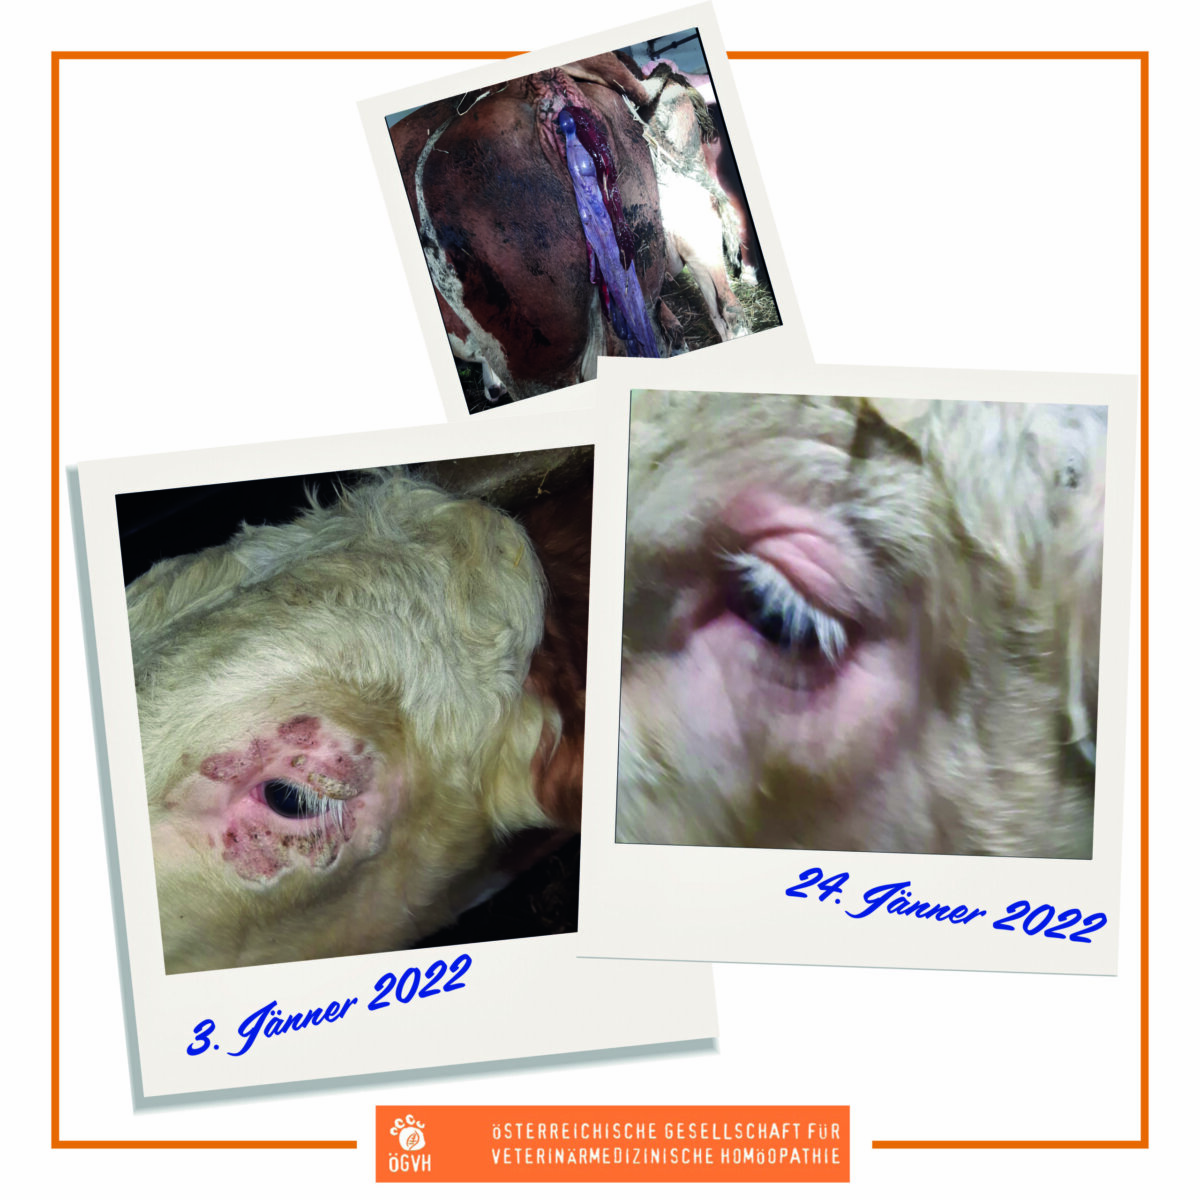 Kostenlose Vortragsreihe: Homöopathie in der Nutztierpraxis Case reports & Arzneimittelbilder